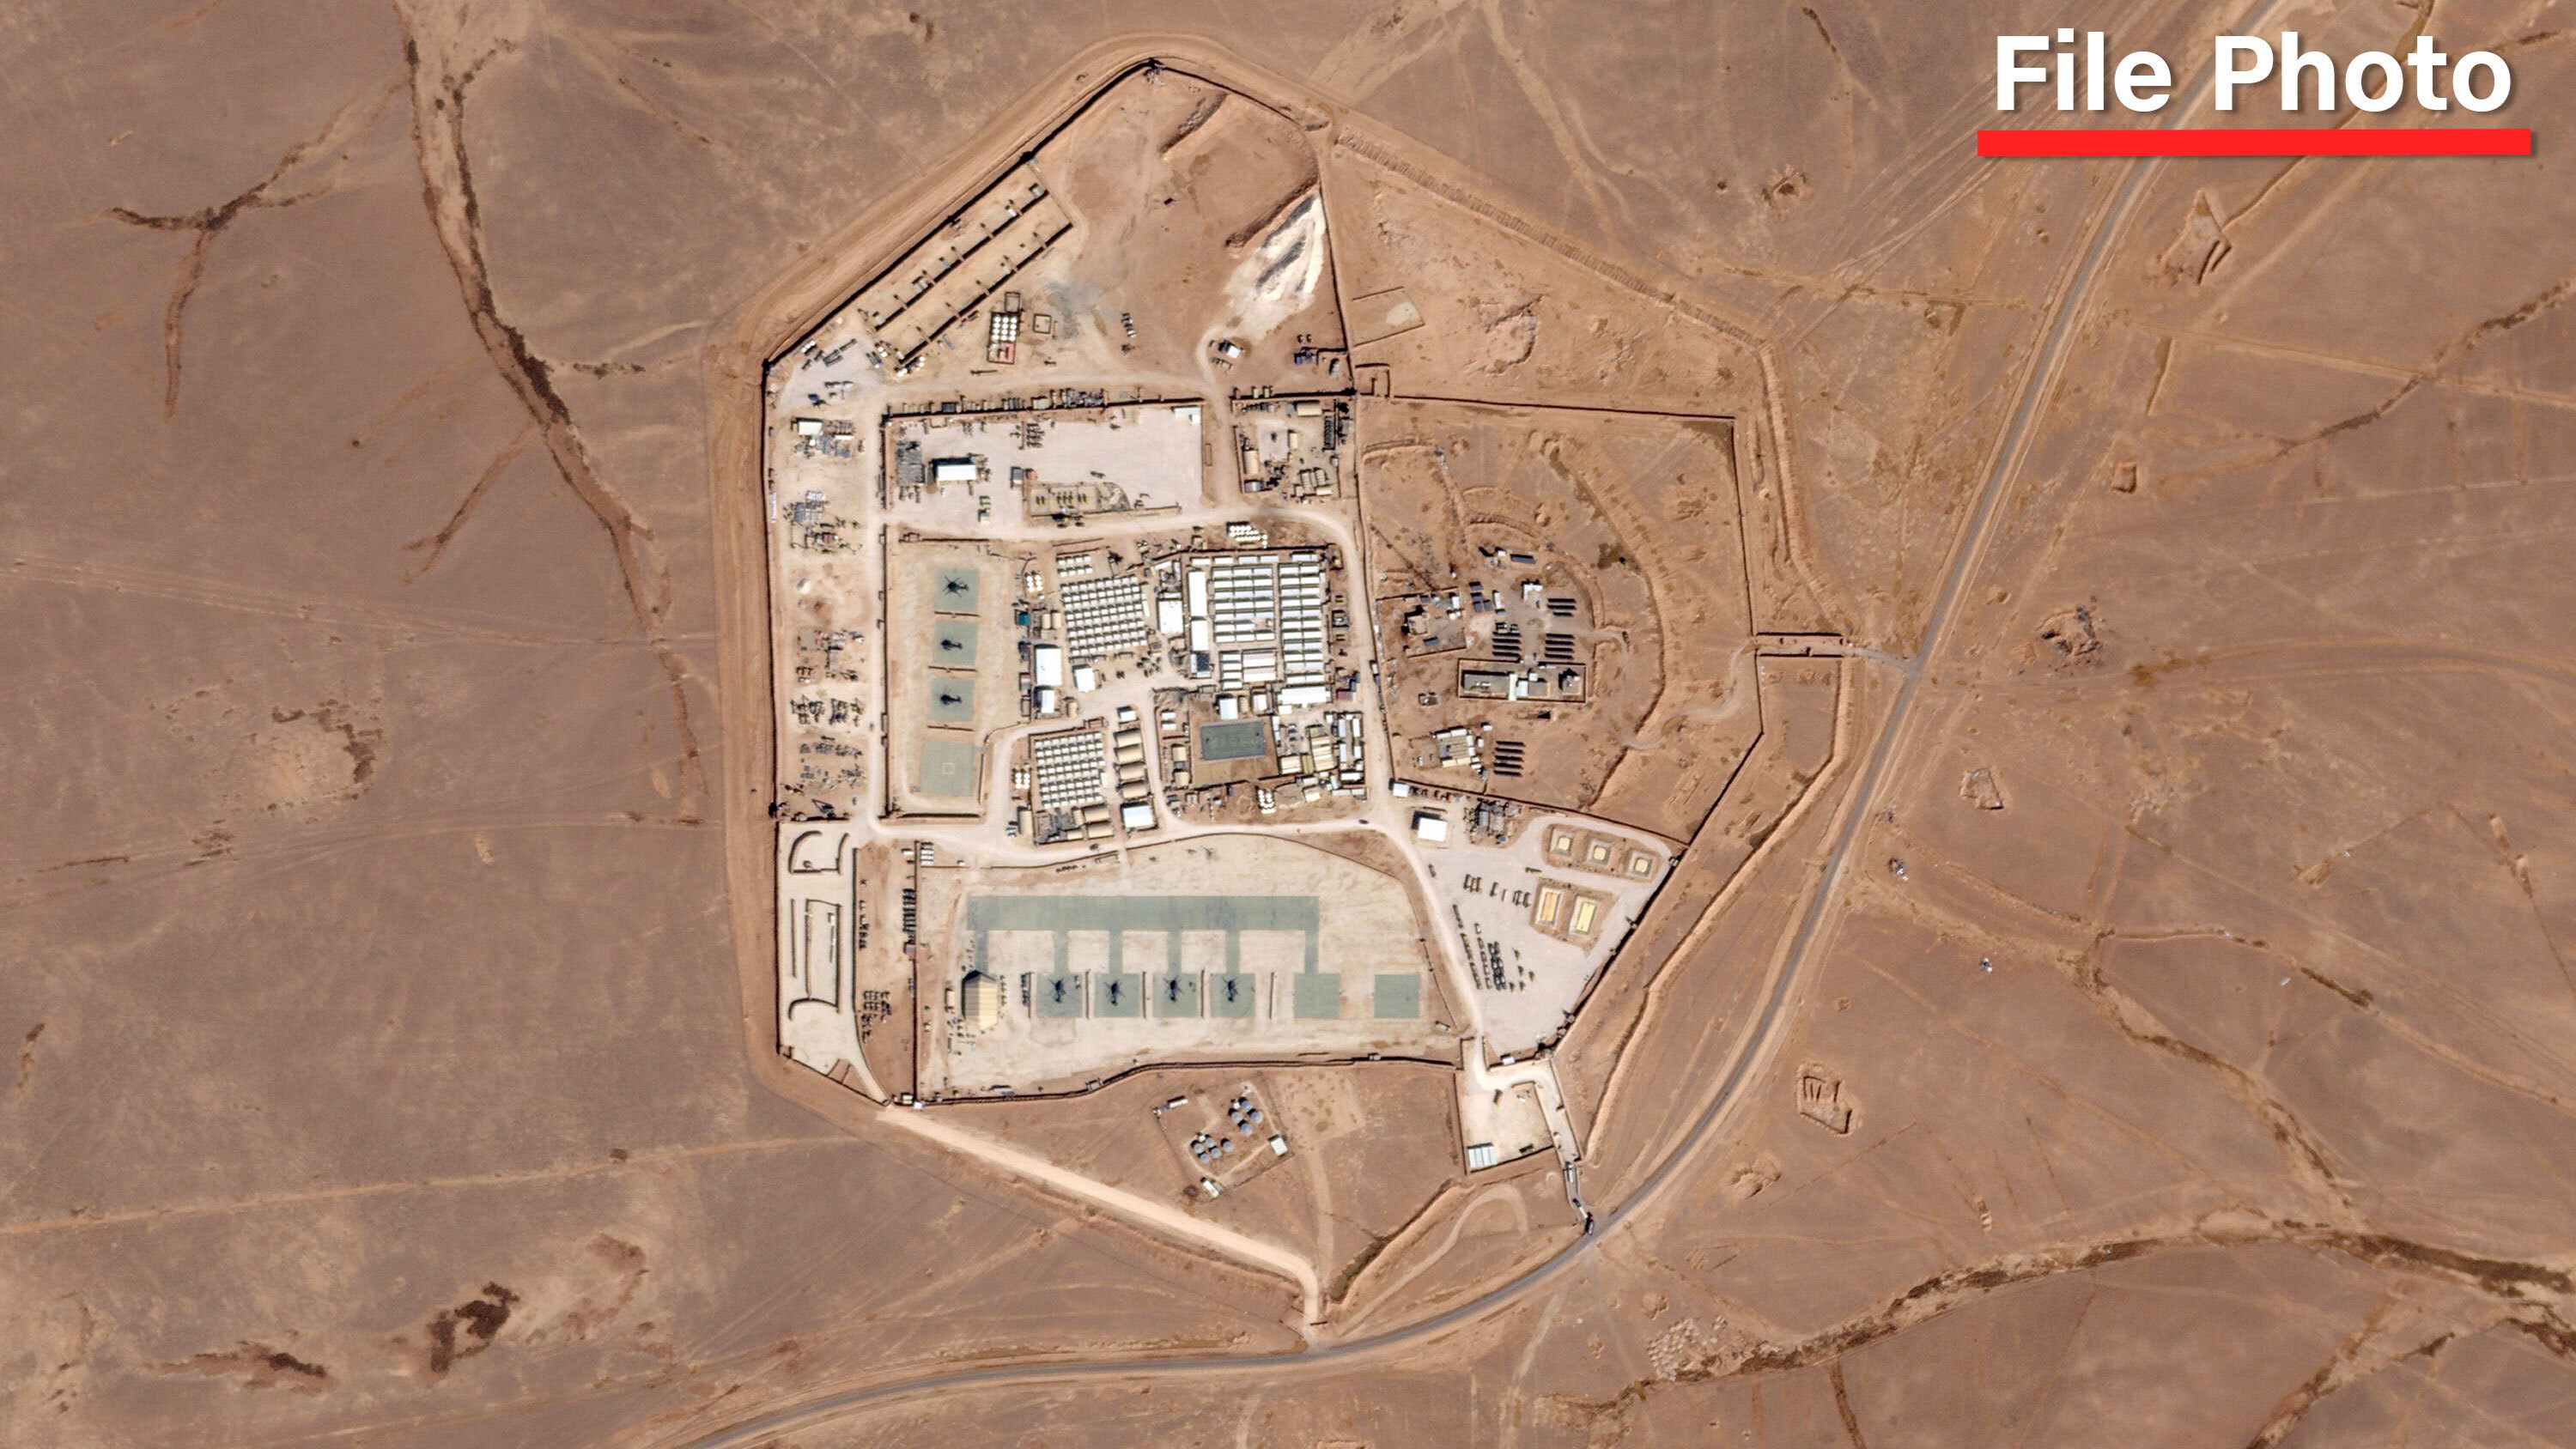 Ảnh vệ tinh chụp toàn cảnh căn cứ Tower 22 của Mỹ ở khu vực biên giới Jordan - Syria.